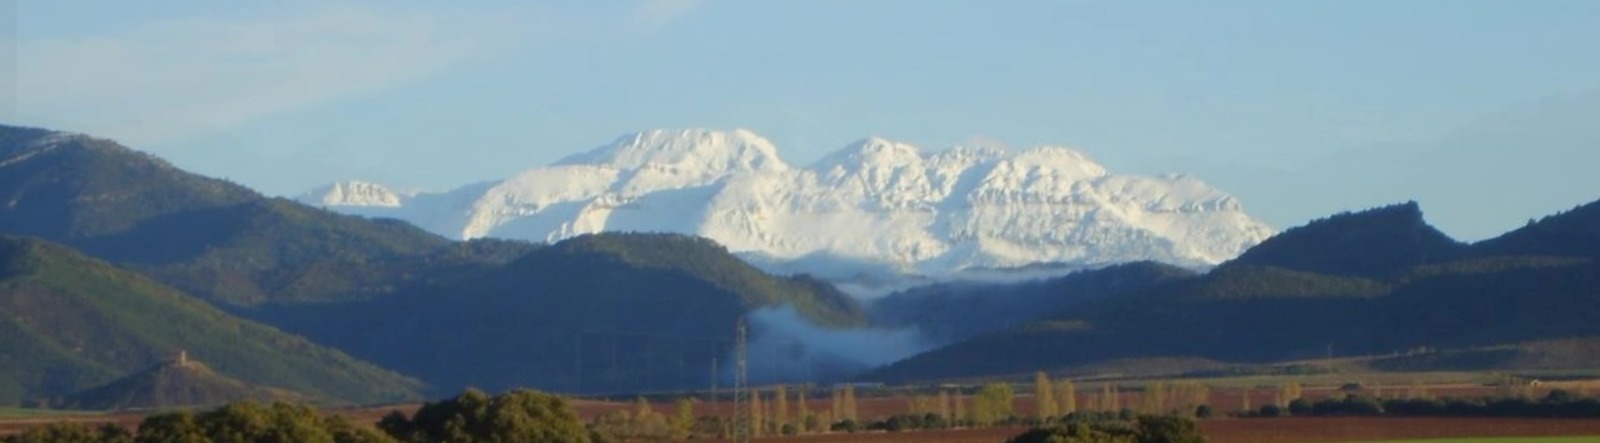 Snow mountains